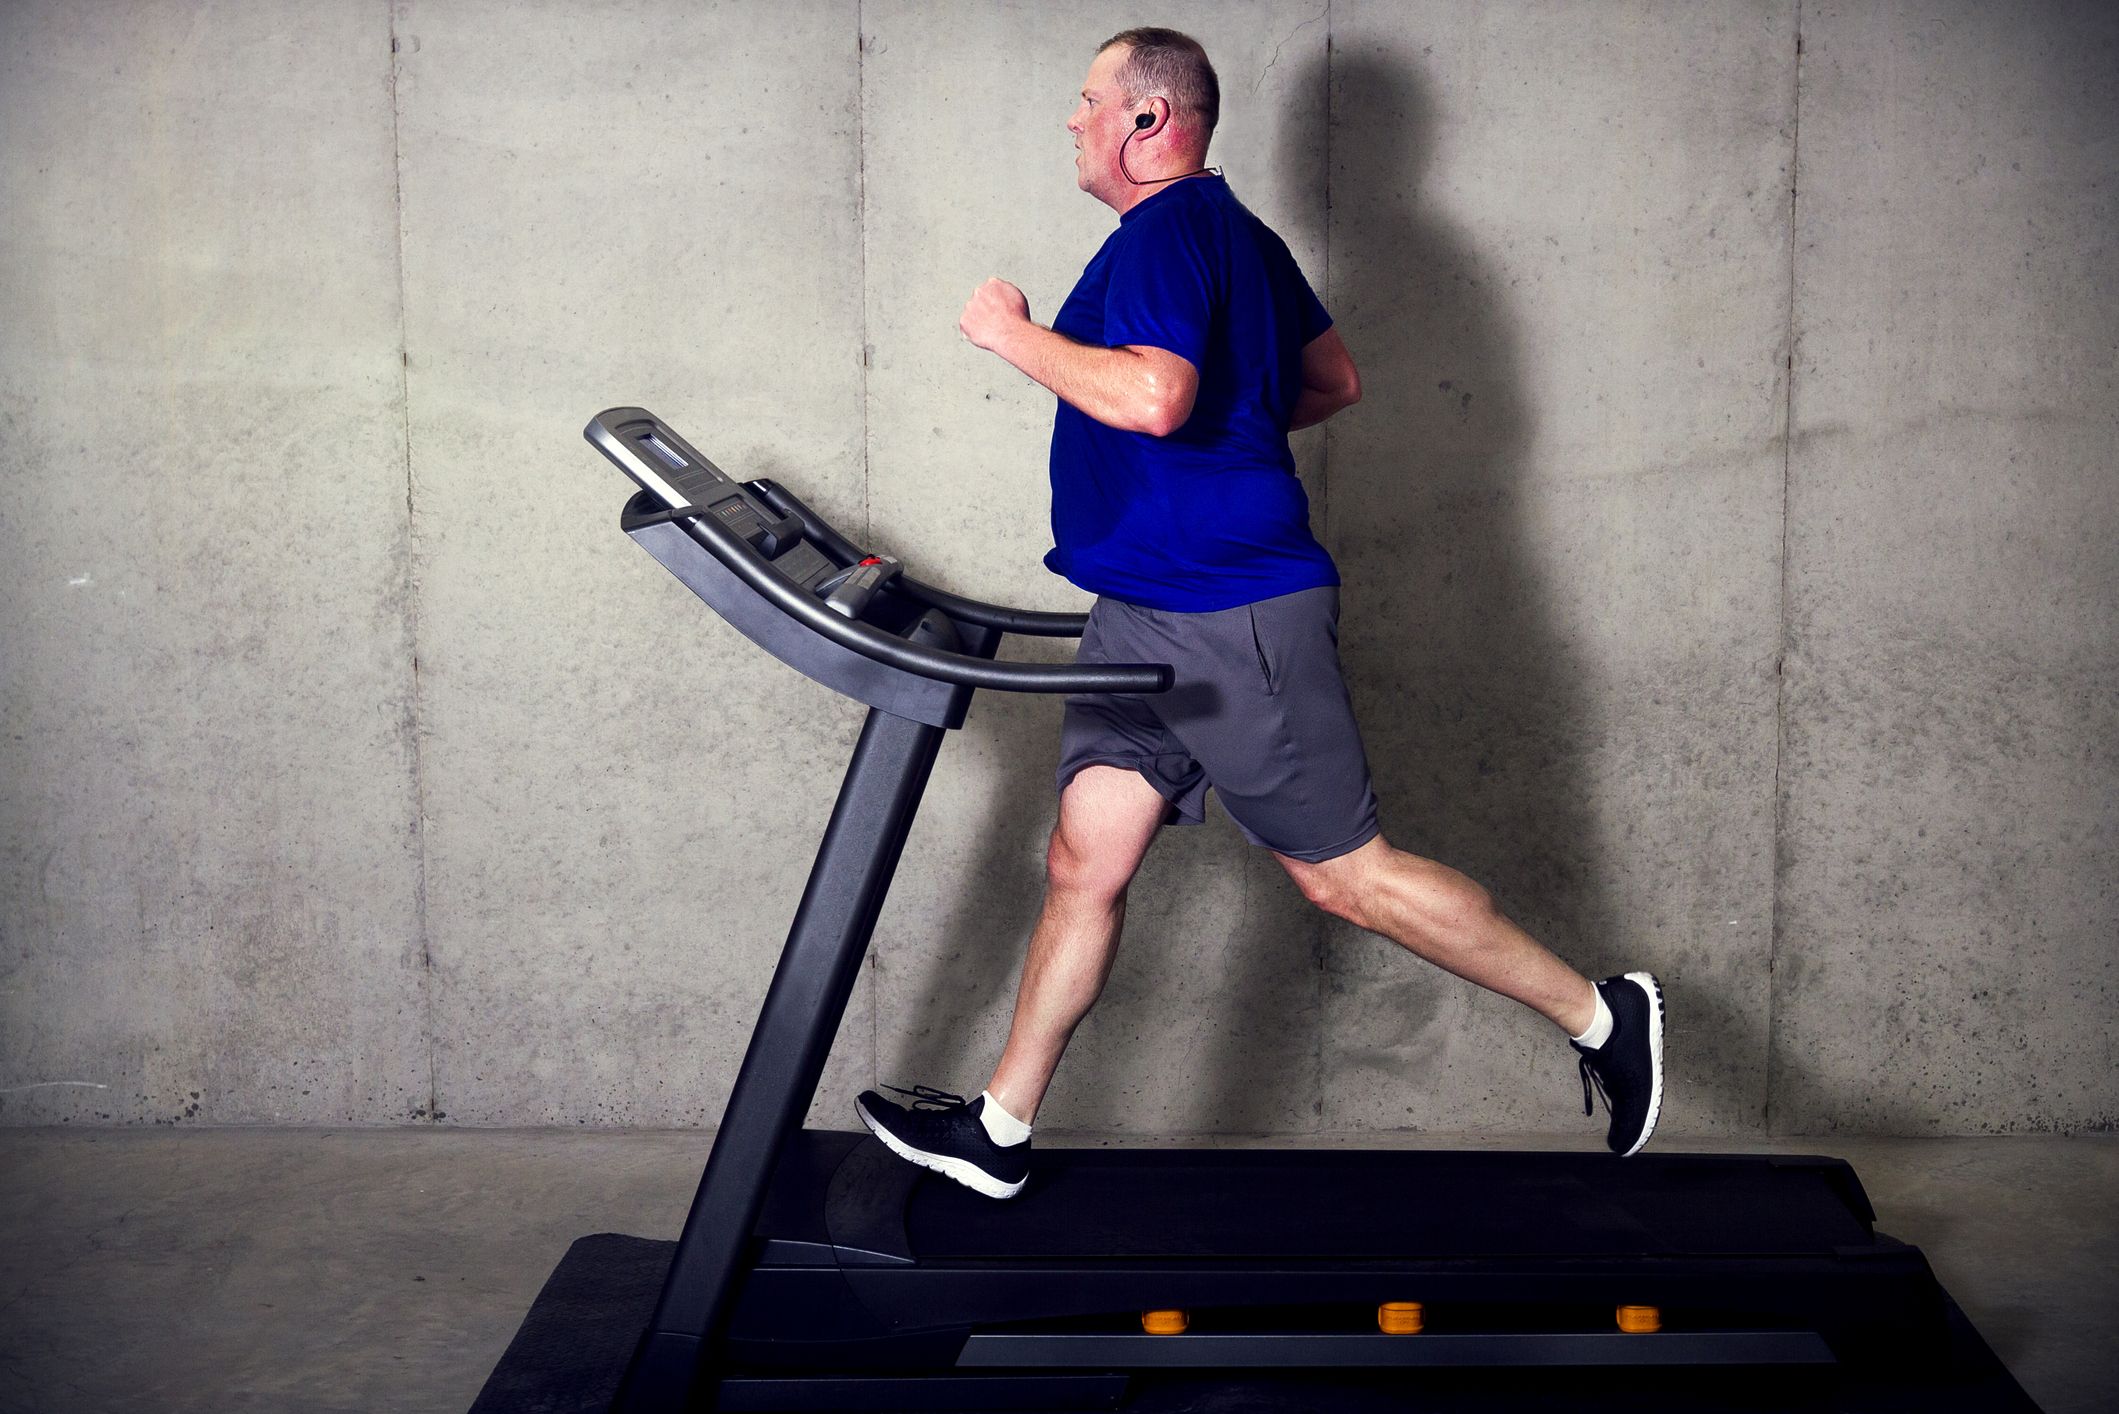 A futópad rendszeres használatával hatékonyan küzdhetünk a túlsúly ellen